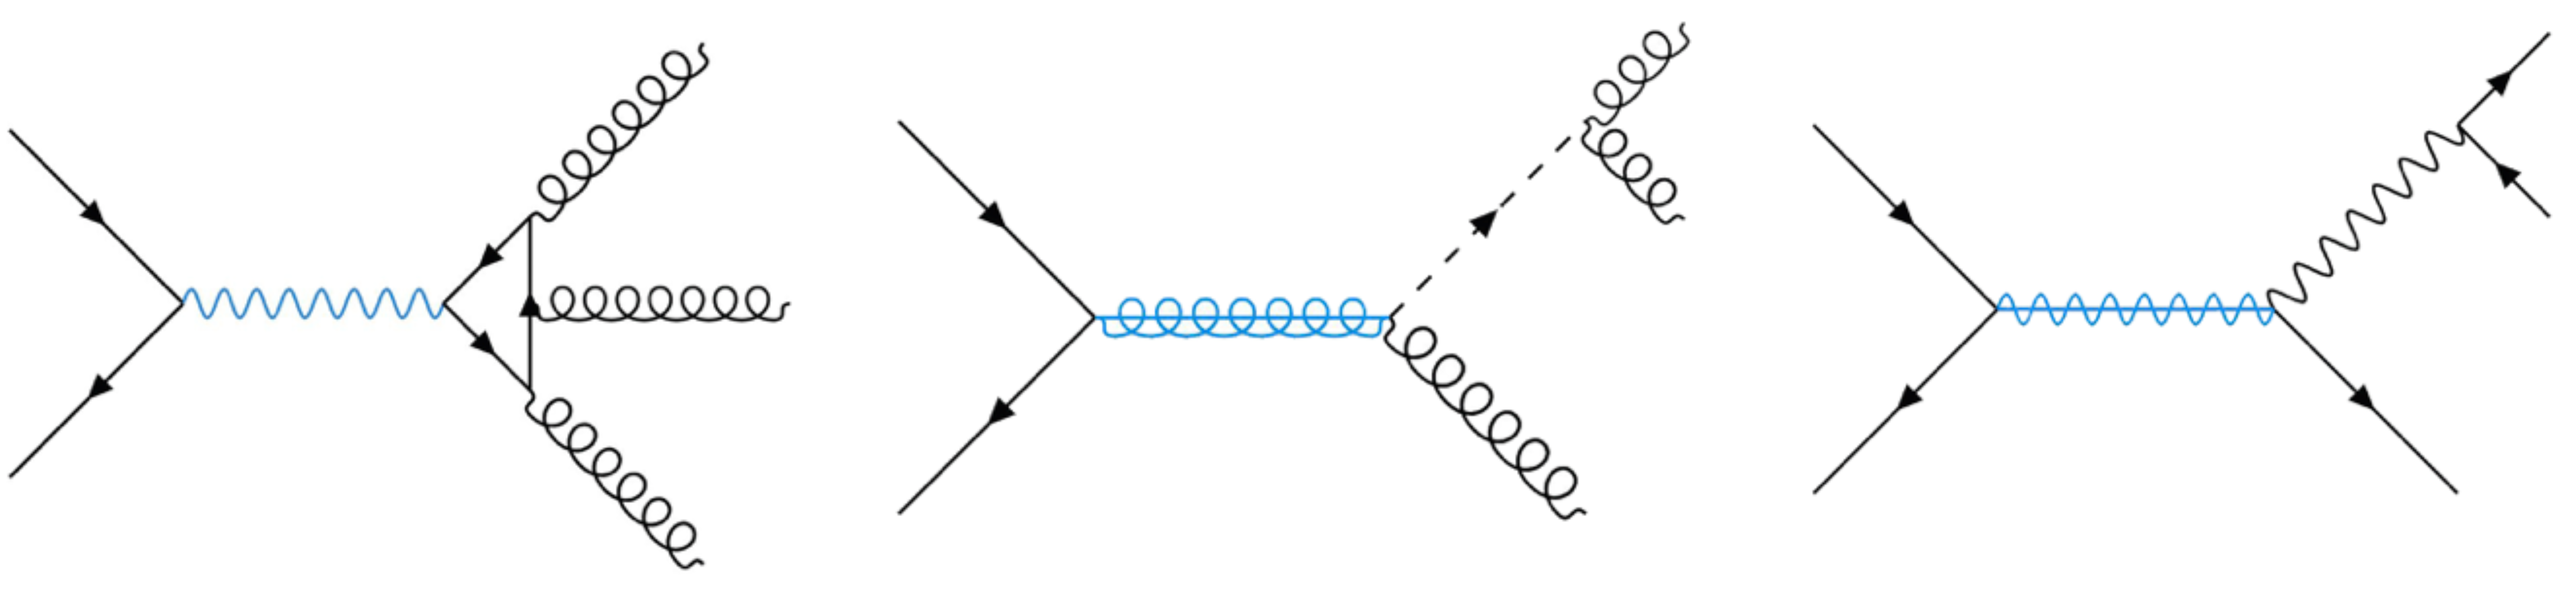 Feynman diagrams